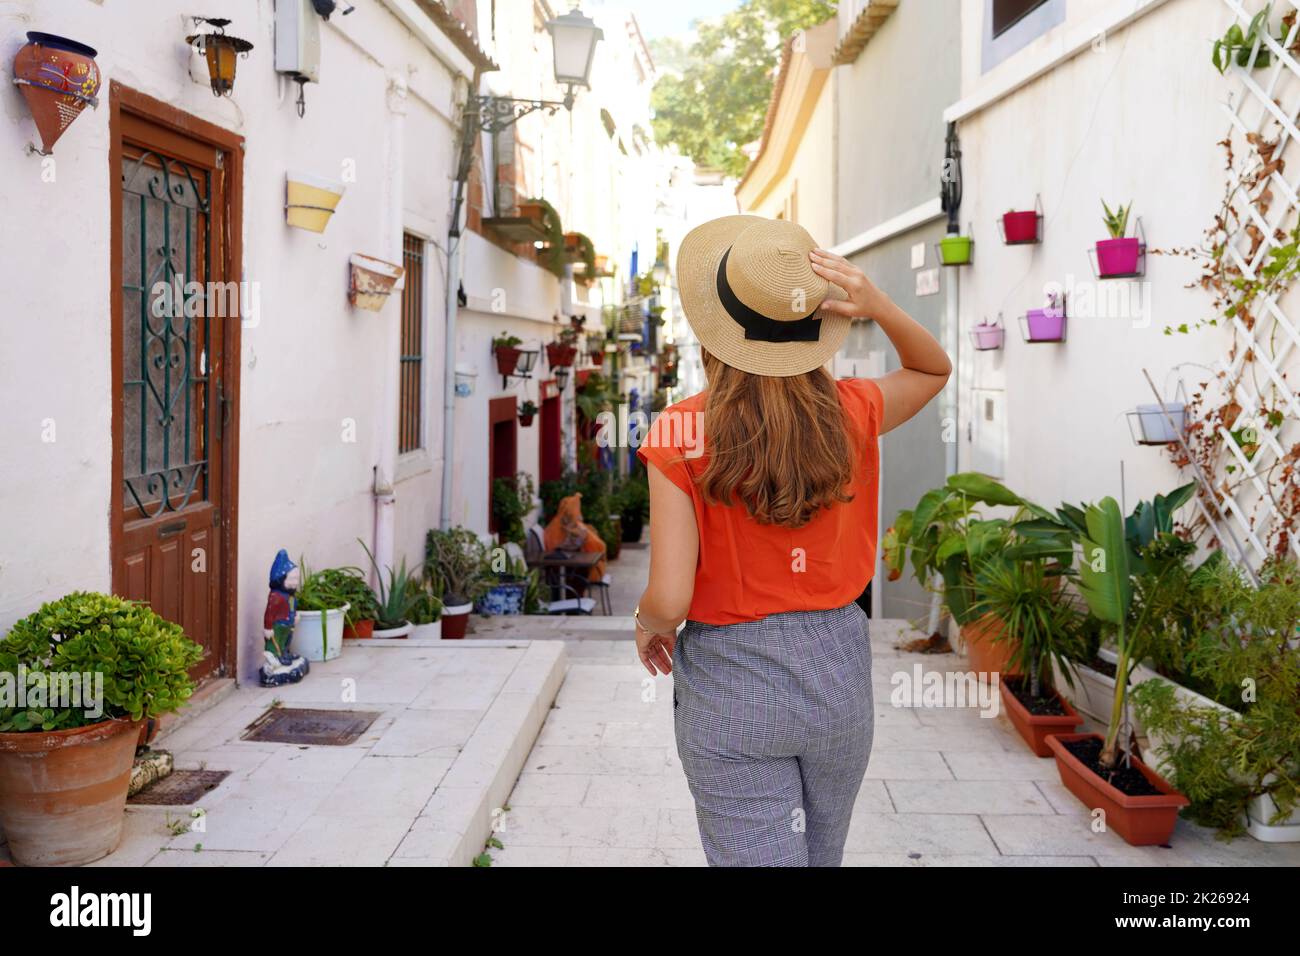 Visitare Alicante in Spagna. Donna viaggiatore visita il quartiere Santa Cruz di Alicante in Spagna. Ragazza turistica che esplora la città europea con la tipica architettura e decorazione mediterranea. Foto Stock